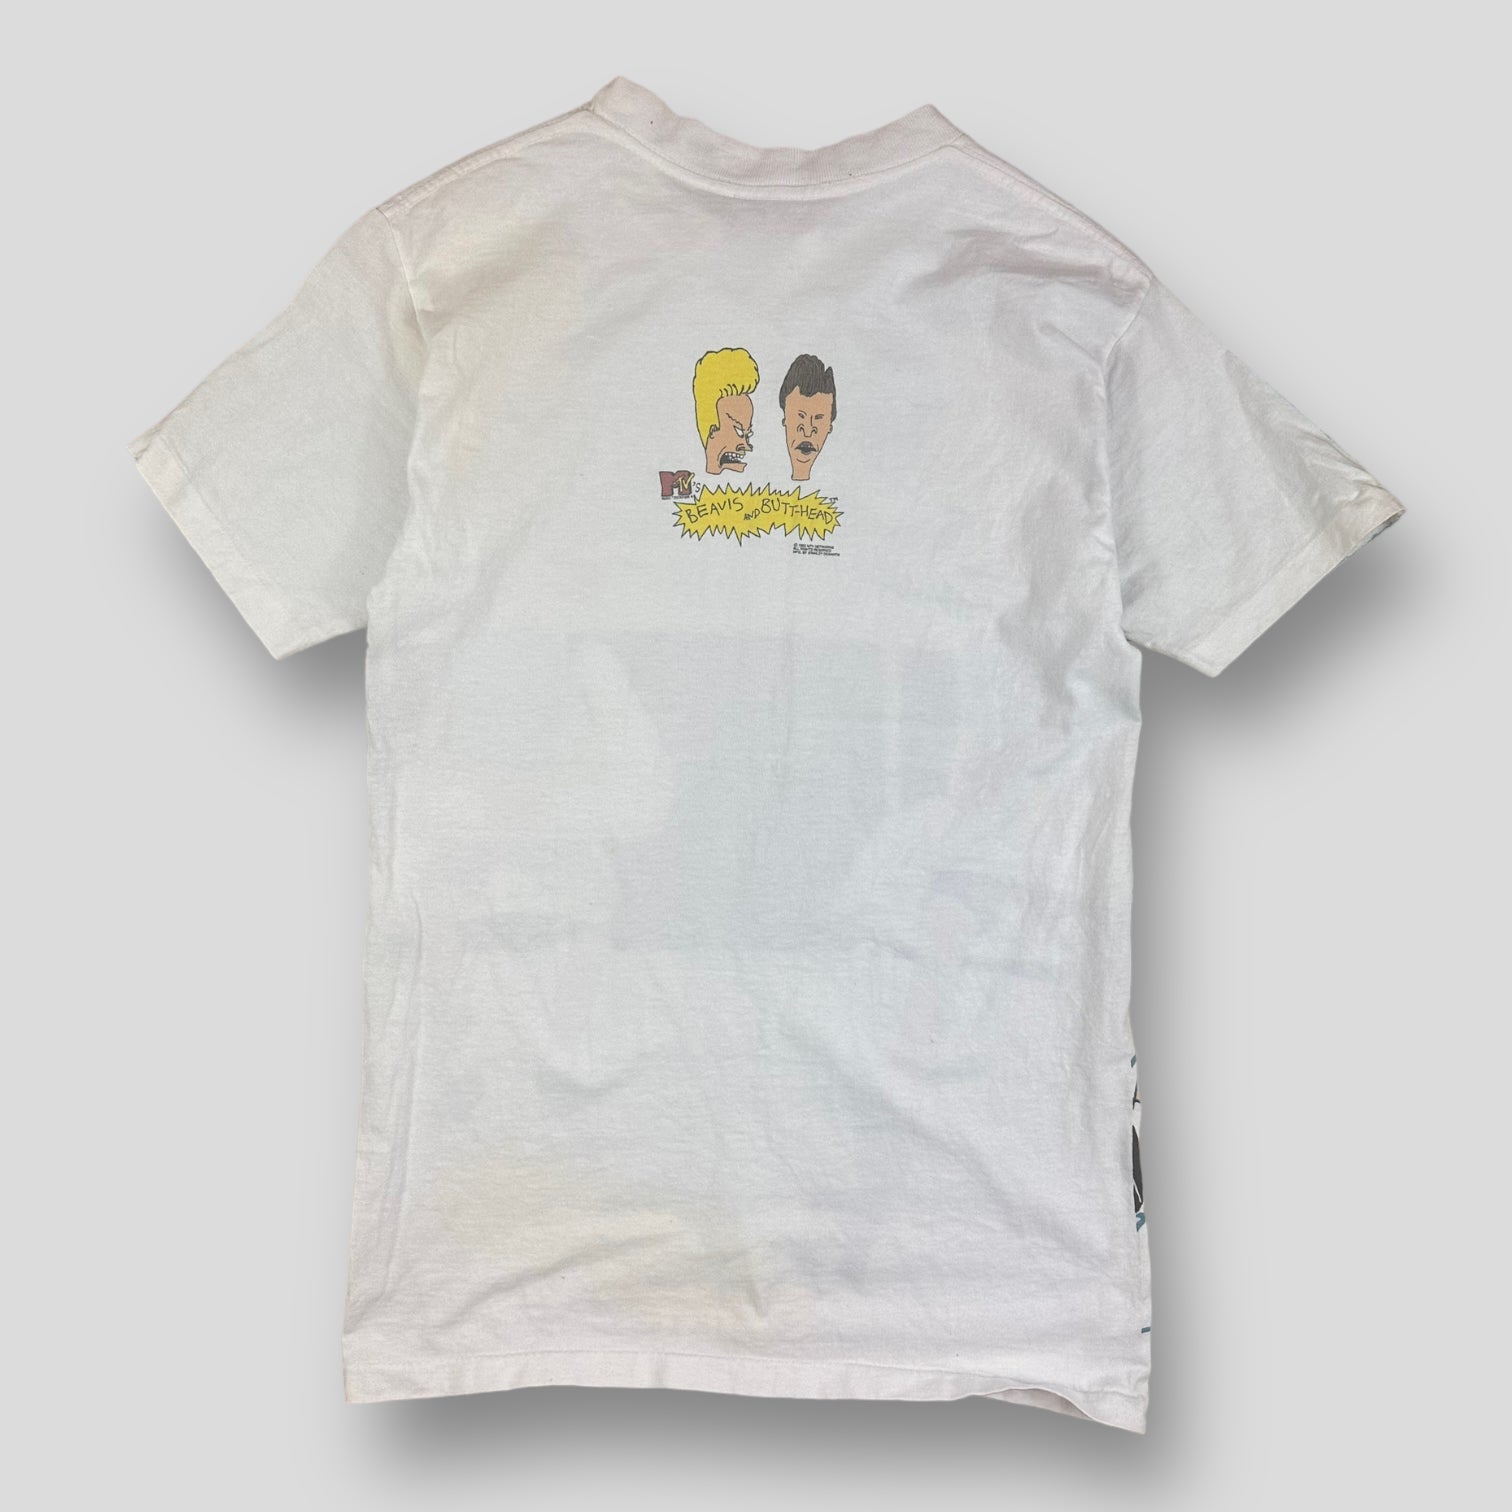 Beavis and Butthead t-shirt